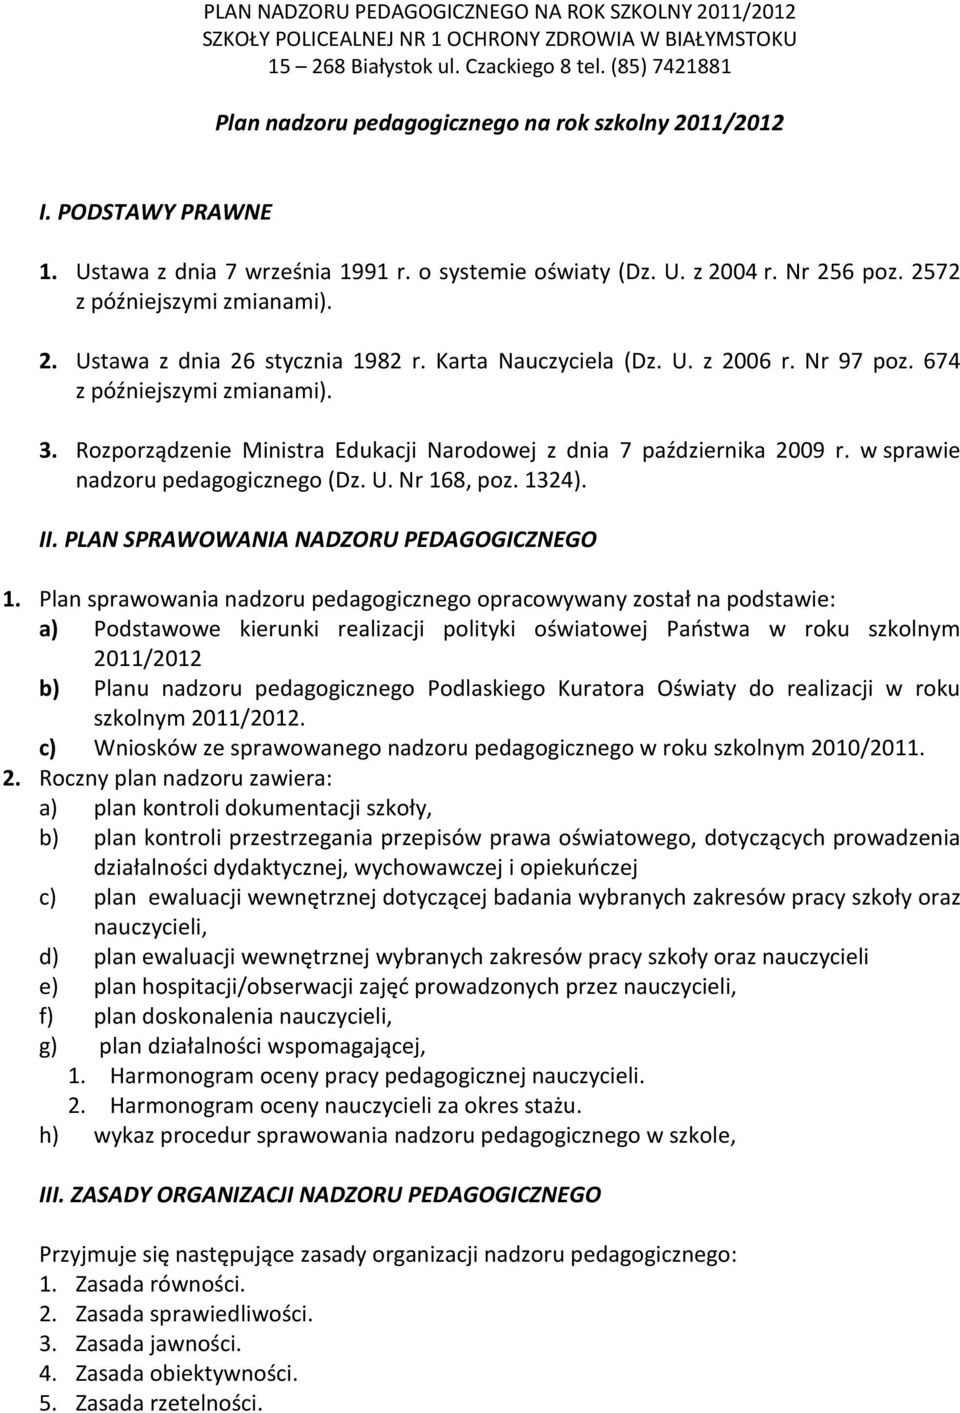 Rozporządzenie Ministra Edukacji Narodowej z dnia 7 października 2009 r. w sprawie nadzoru pedagogicznego (Dz. U. Nr 168, poz. 1324). II. PLAN SPRAWOWANIA NADZORU PEDAGOGICZNEGO 1.